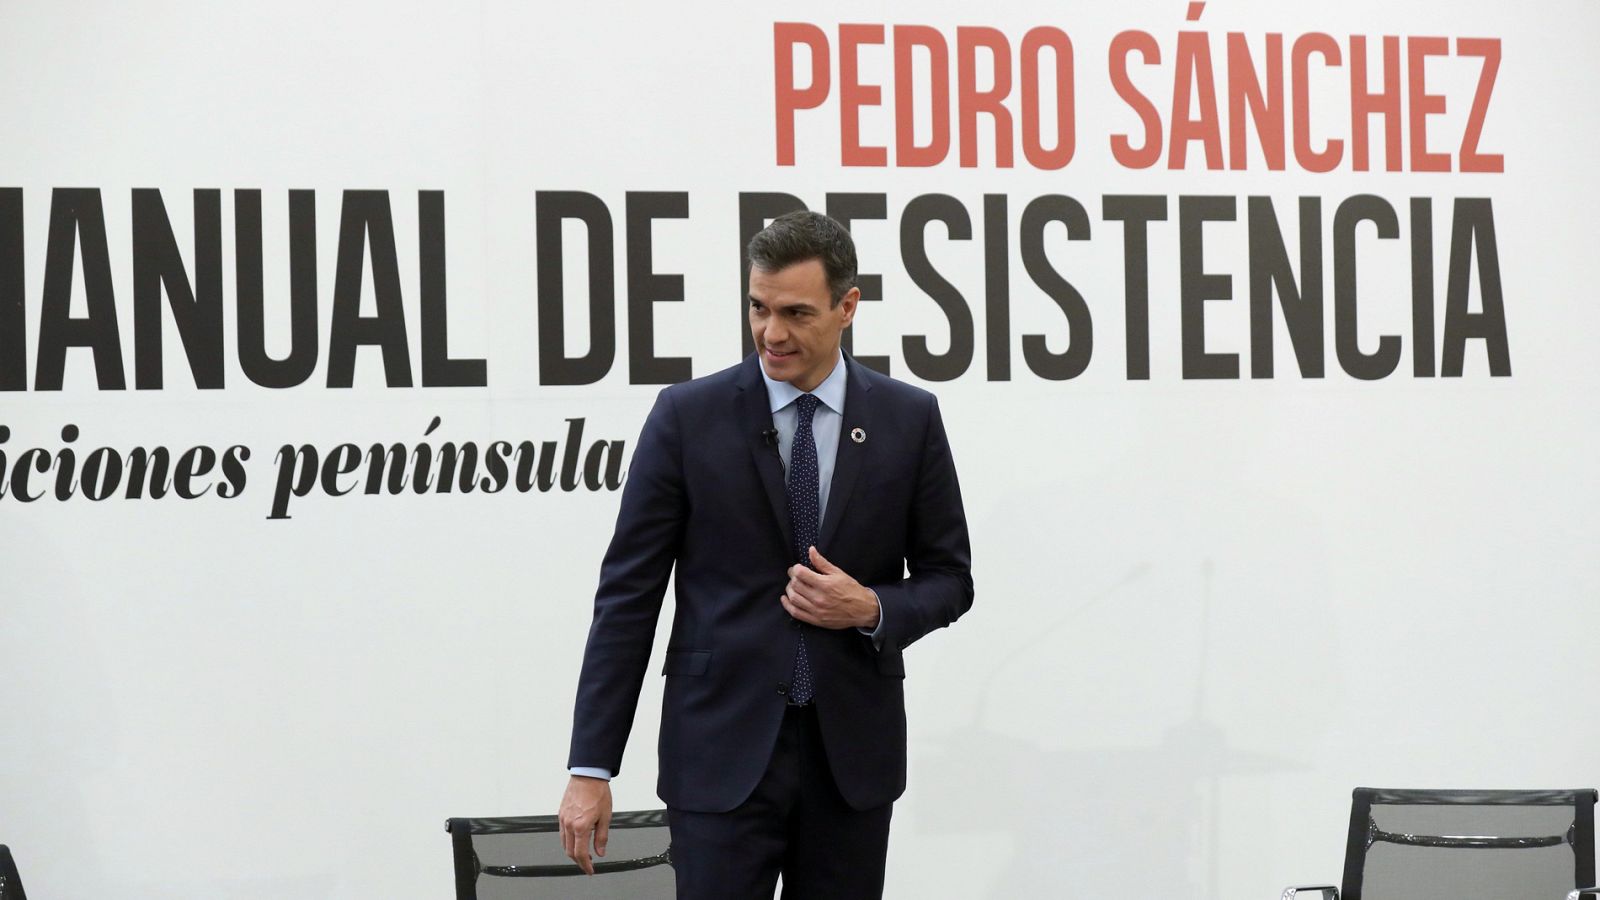 Vídeo: ¿Qué cuenta el 'Manual de resistencia' de Pedro Sánchez? - RTVE.es